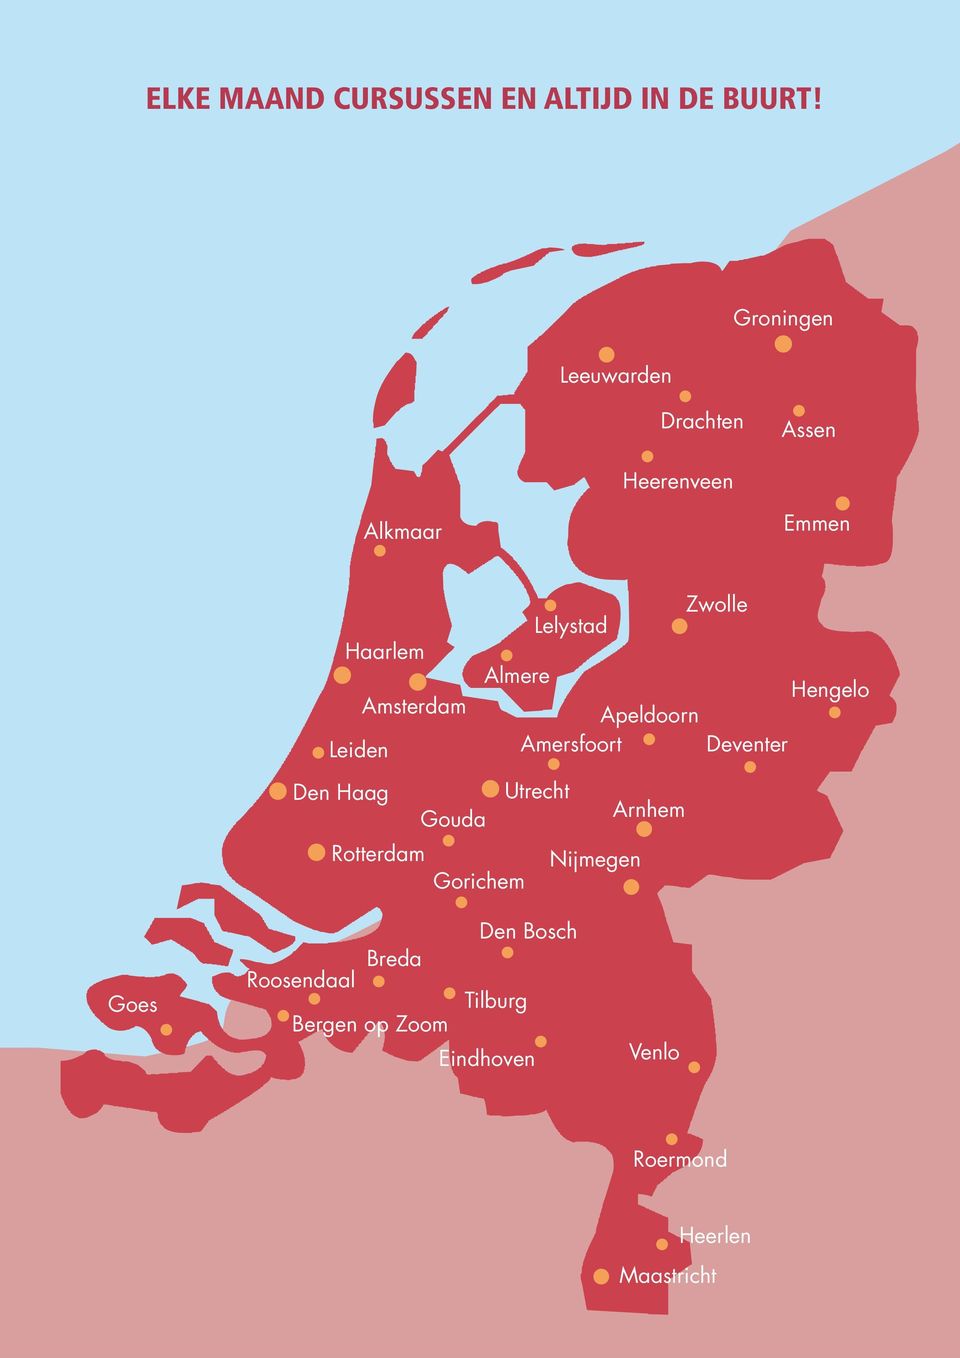 Almere Lelystad Apeldoorn Amersfoort Zwolle Deventer Hengelo Den Haag Utrecht Gouda